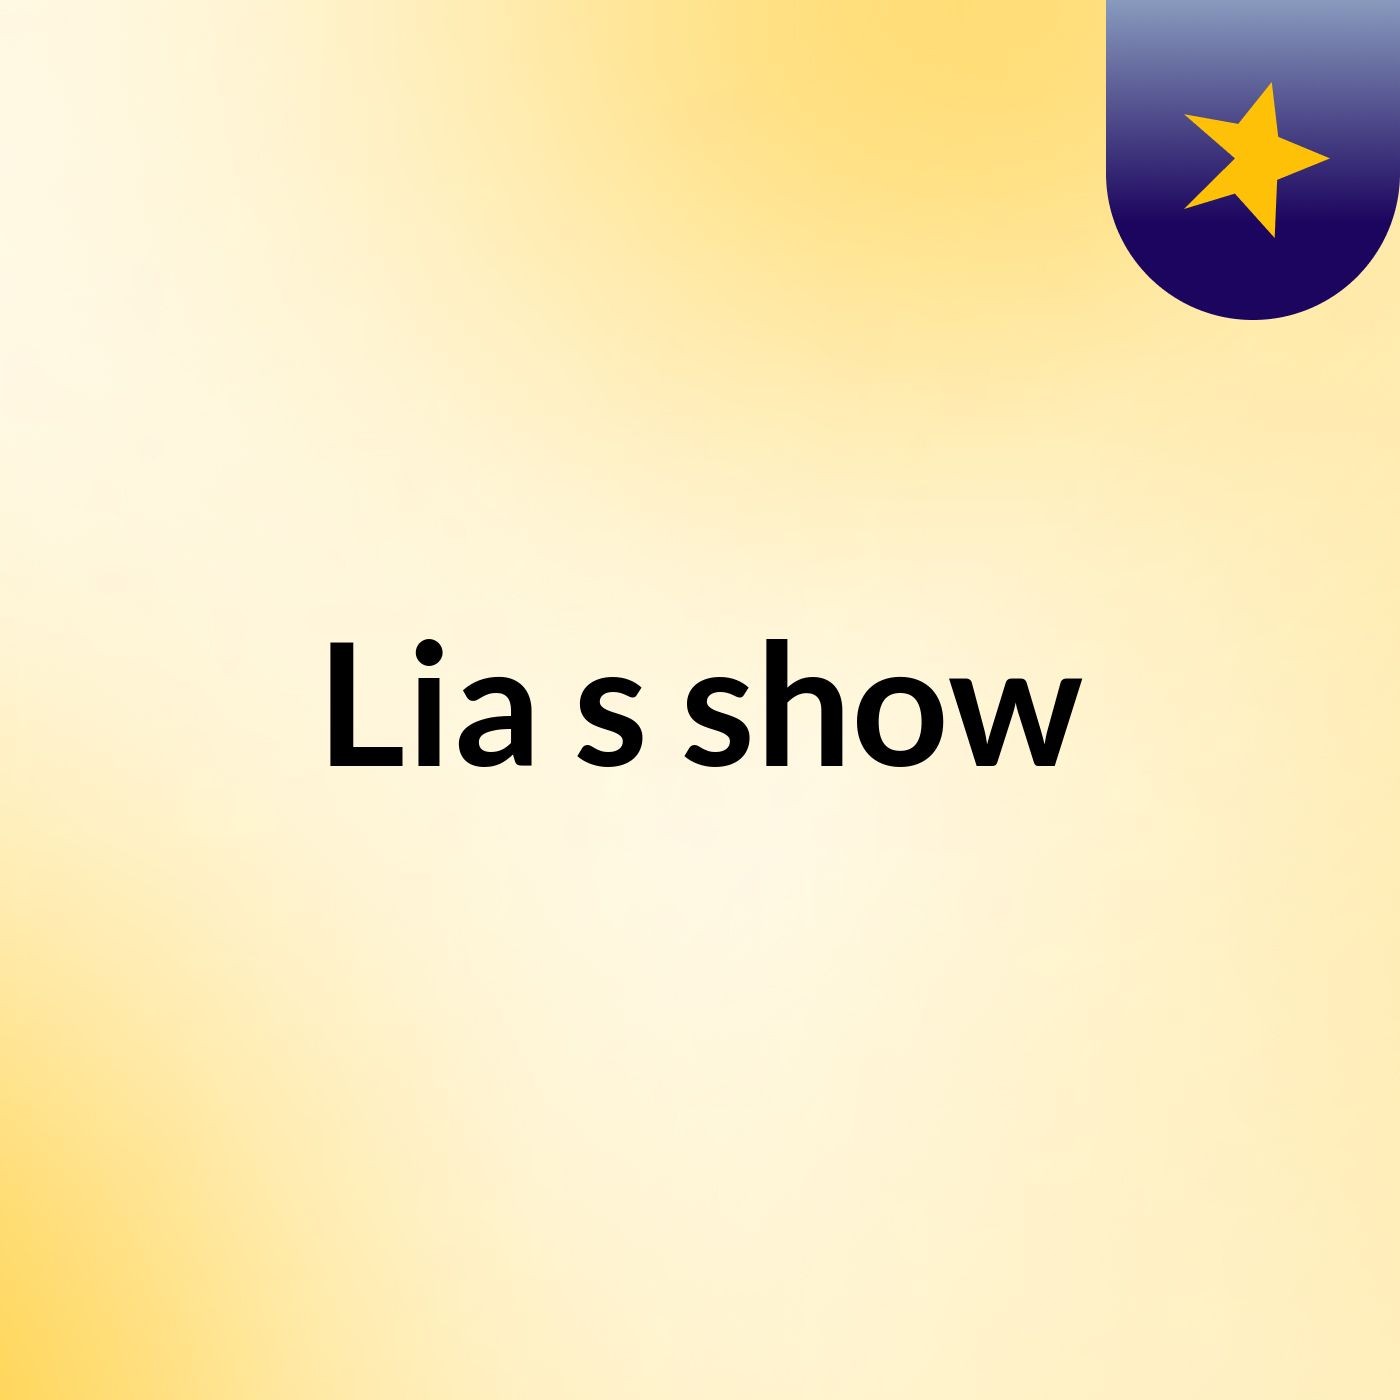 Lia's show